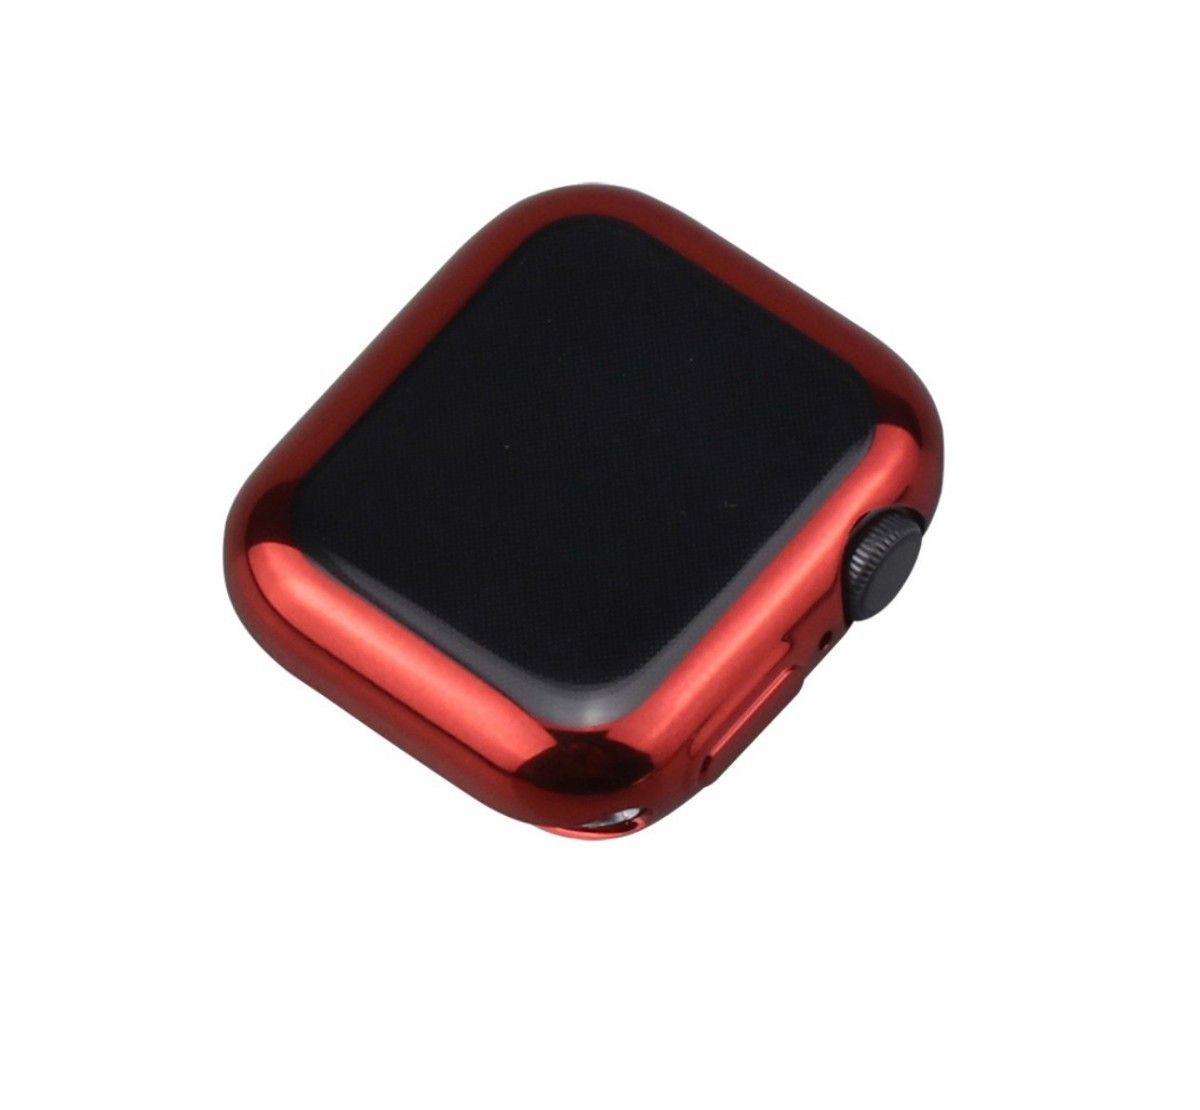 ★在庫セール5/22まで★最新機種対応★ Apple Watch 41㎜ ブルー 表面側面カバー アップルウォッチ ケース 青